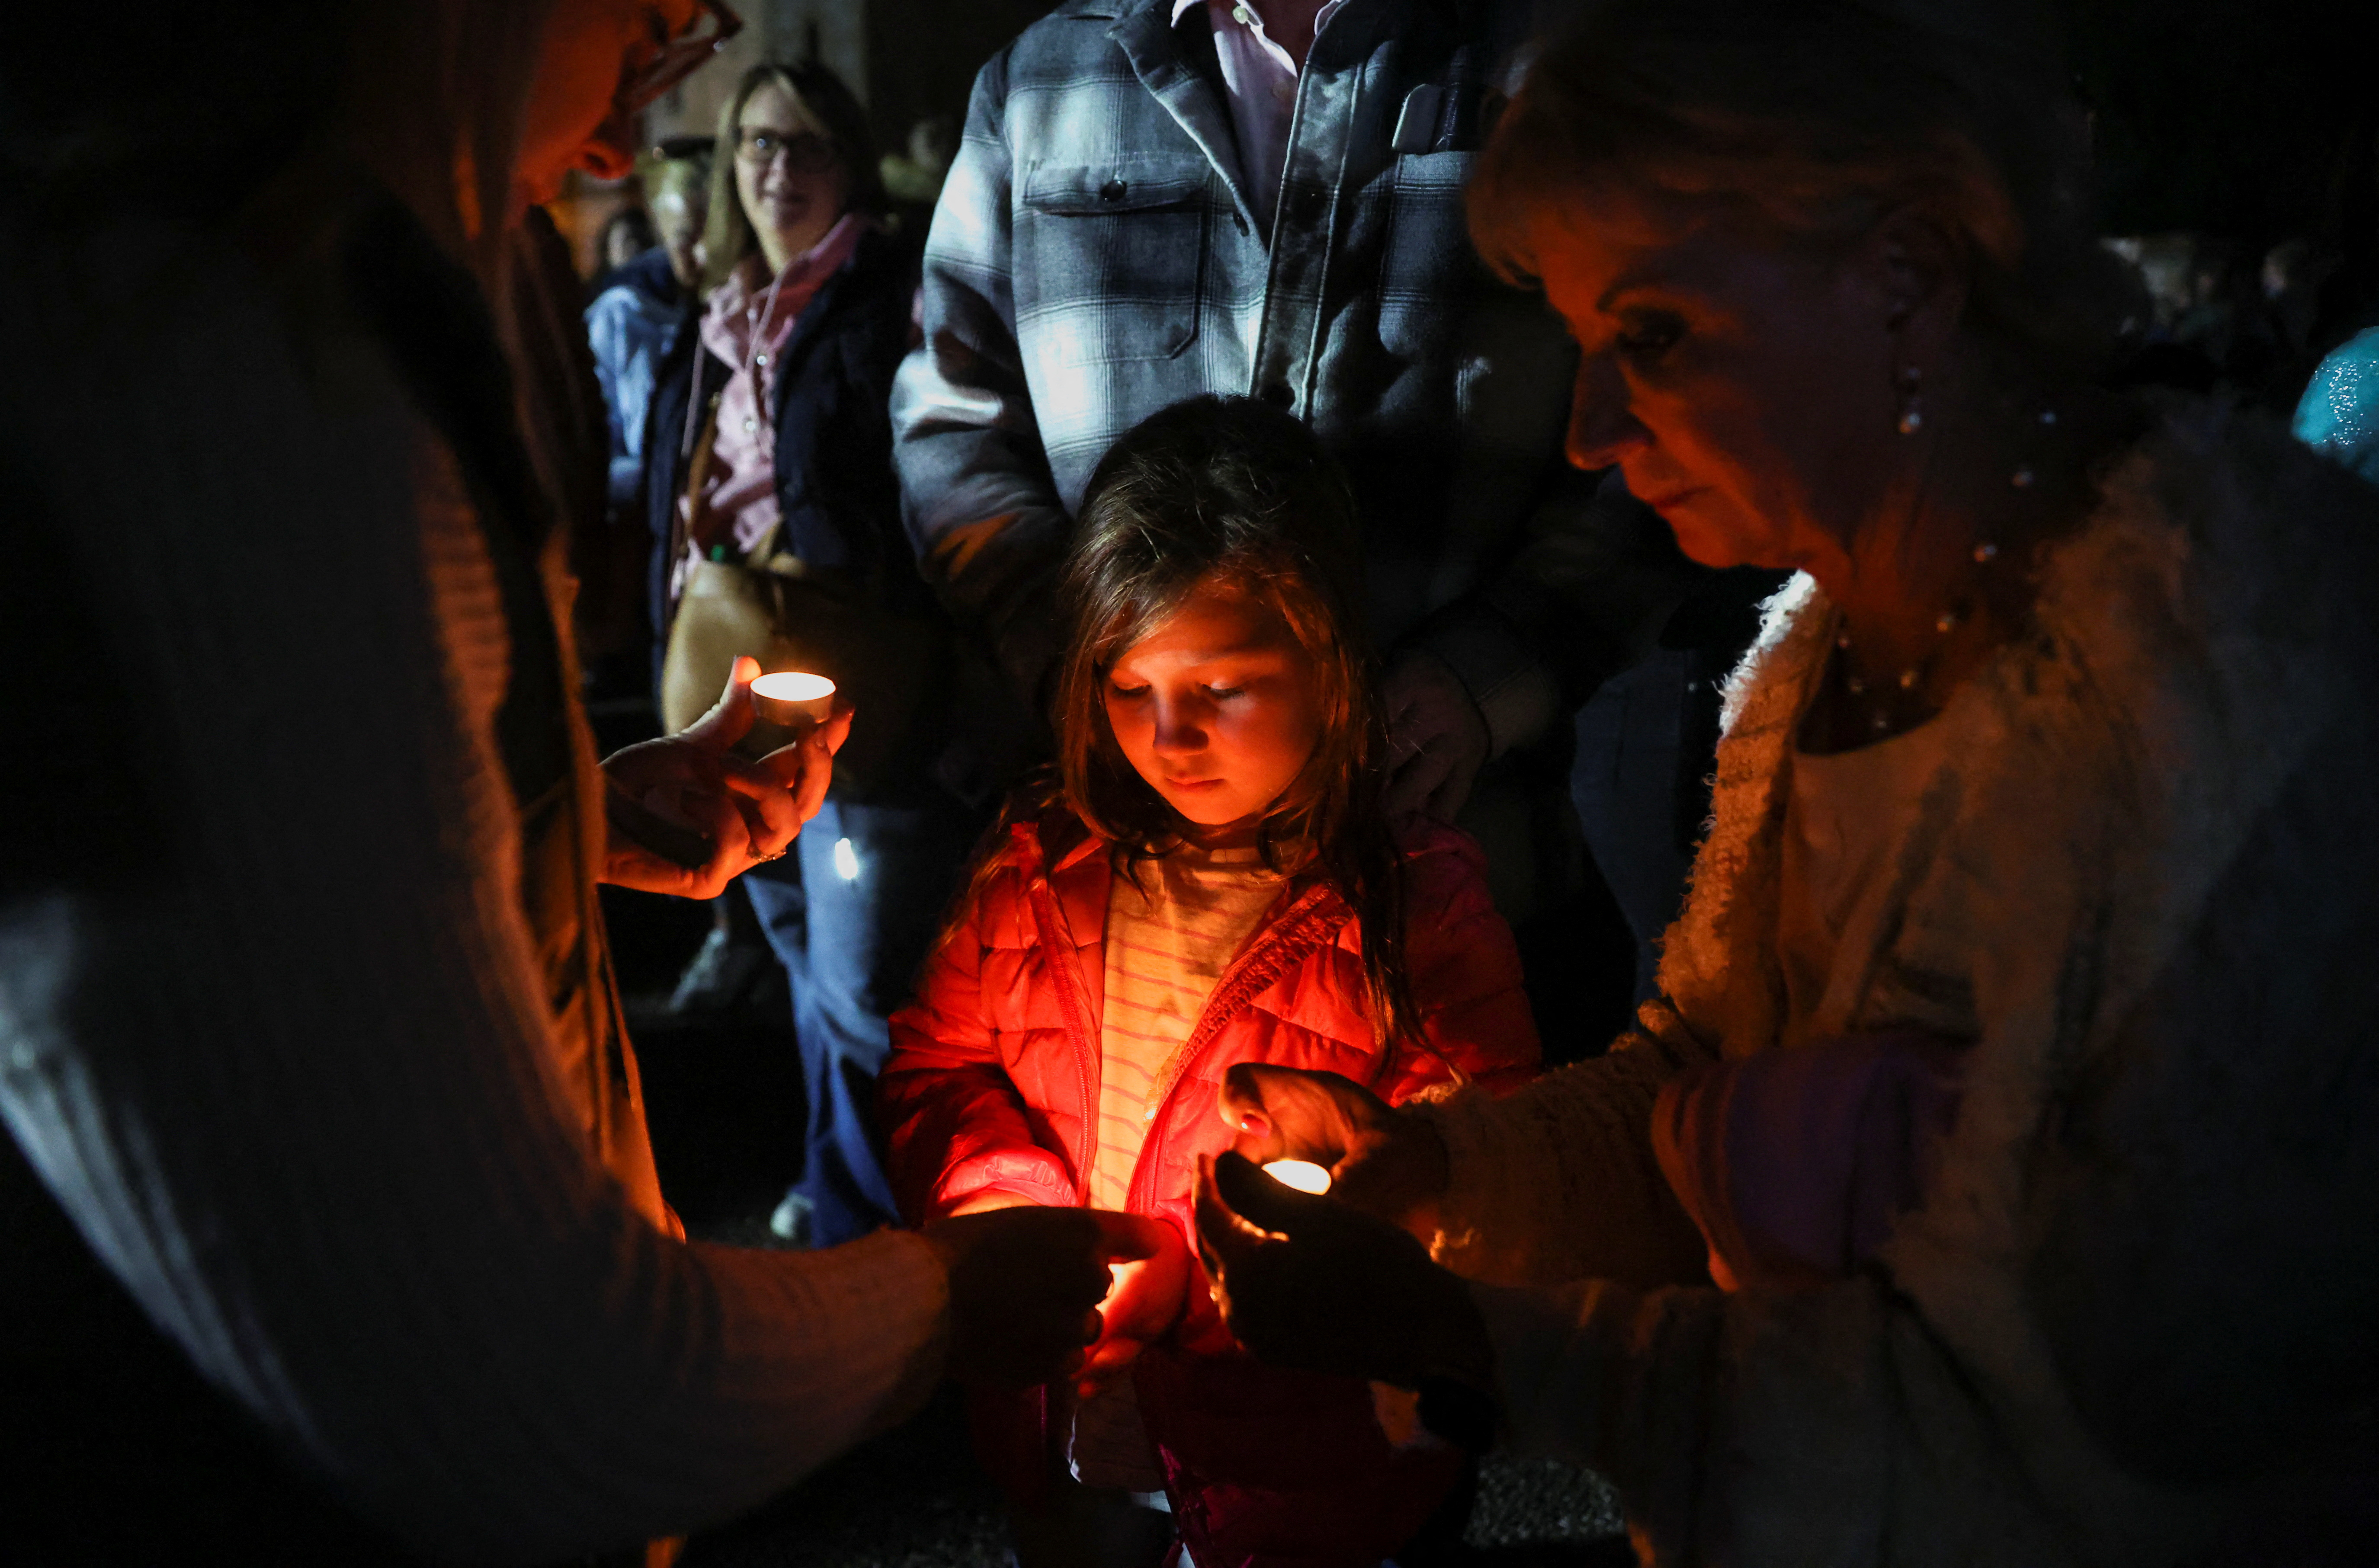 Una niña sostiene una vela mientras la gente asiste a un "momento nacional de reflexión" en honor a la difunta reina Isabel II, el día antes de su funeral, en Windsor, Gran Bretaña 18 de septiembre de 2022. REUTERS/Carl Recine